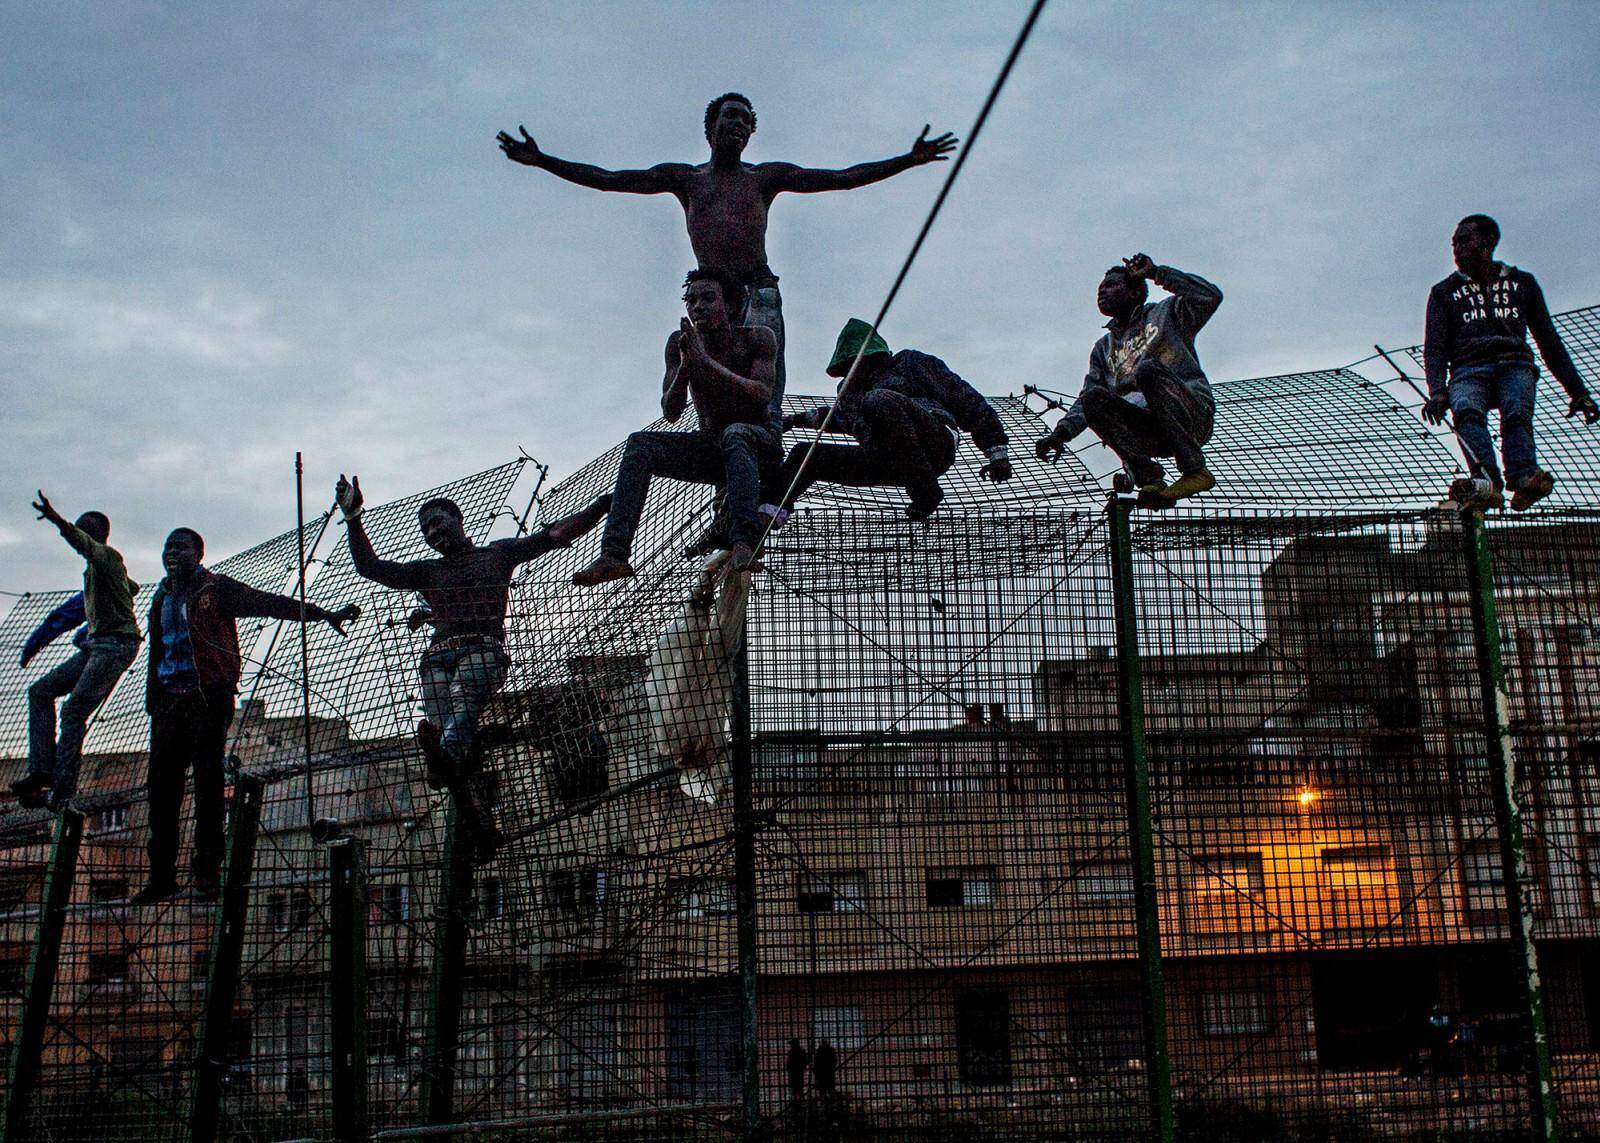 Sergi Cámara, Le Mur de l’Europe, Espagne, 2014. De jeunes Africains tentent d’escalader la double barrière qui sépare l’Afrique de l’Europe, près de Beni Enza à la frontière de l’enclave espagnole de Melilla en mars 2014. Après avoir passé plusieurs heures au sommet de la barrière, ils ont été refoulés vers le Maroc par les forces de sécurité espagnoles. Avec l’aimable autorisation de l’artiste.